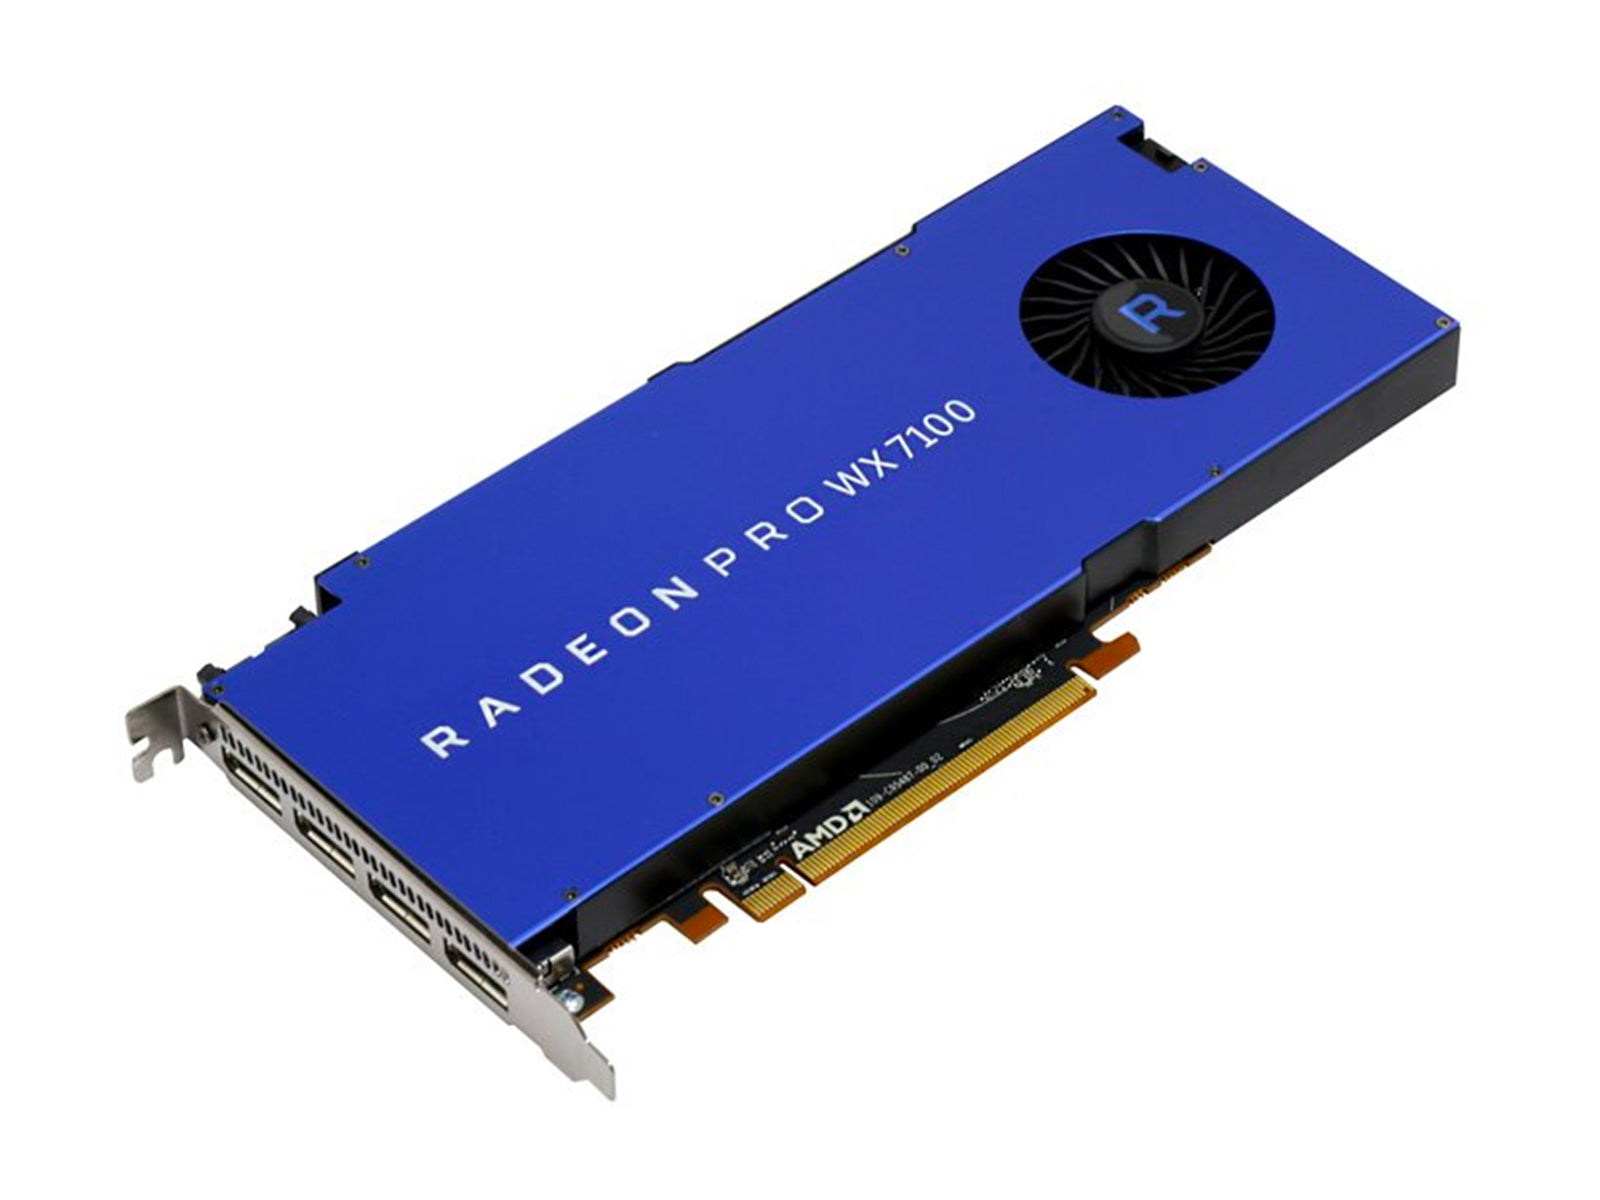 Tarjeta gráfica AMD Radeon Pro WX 7100 de 8 GB (100-505826) Monitors.com